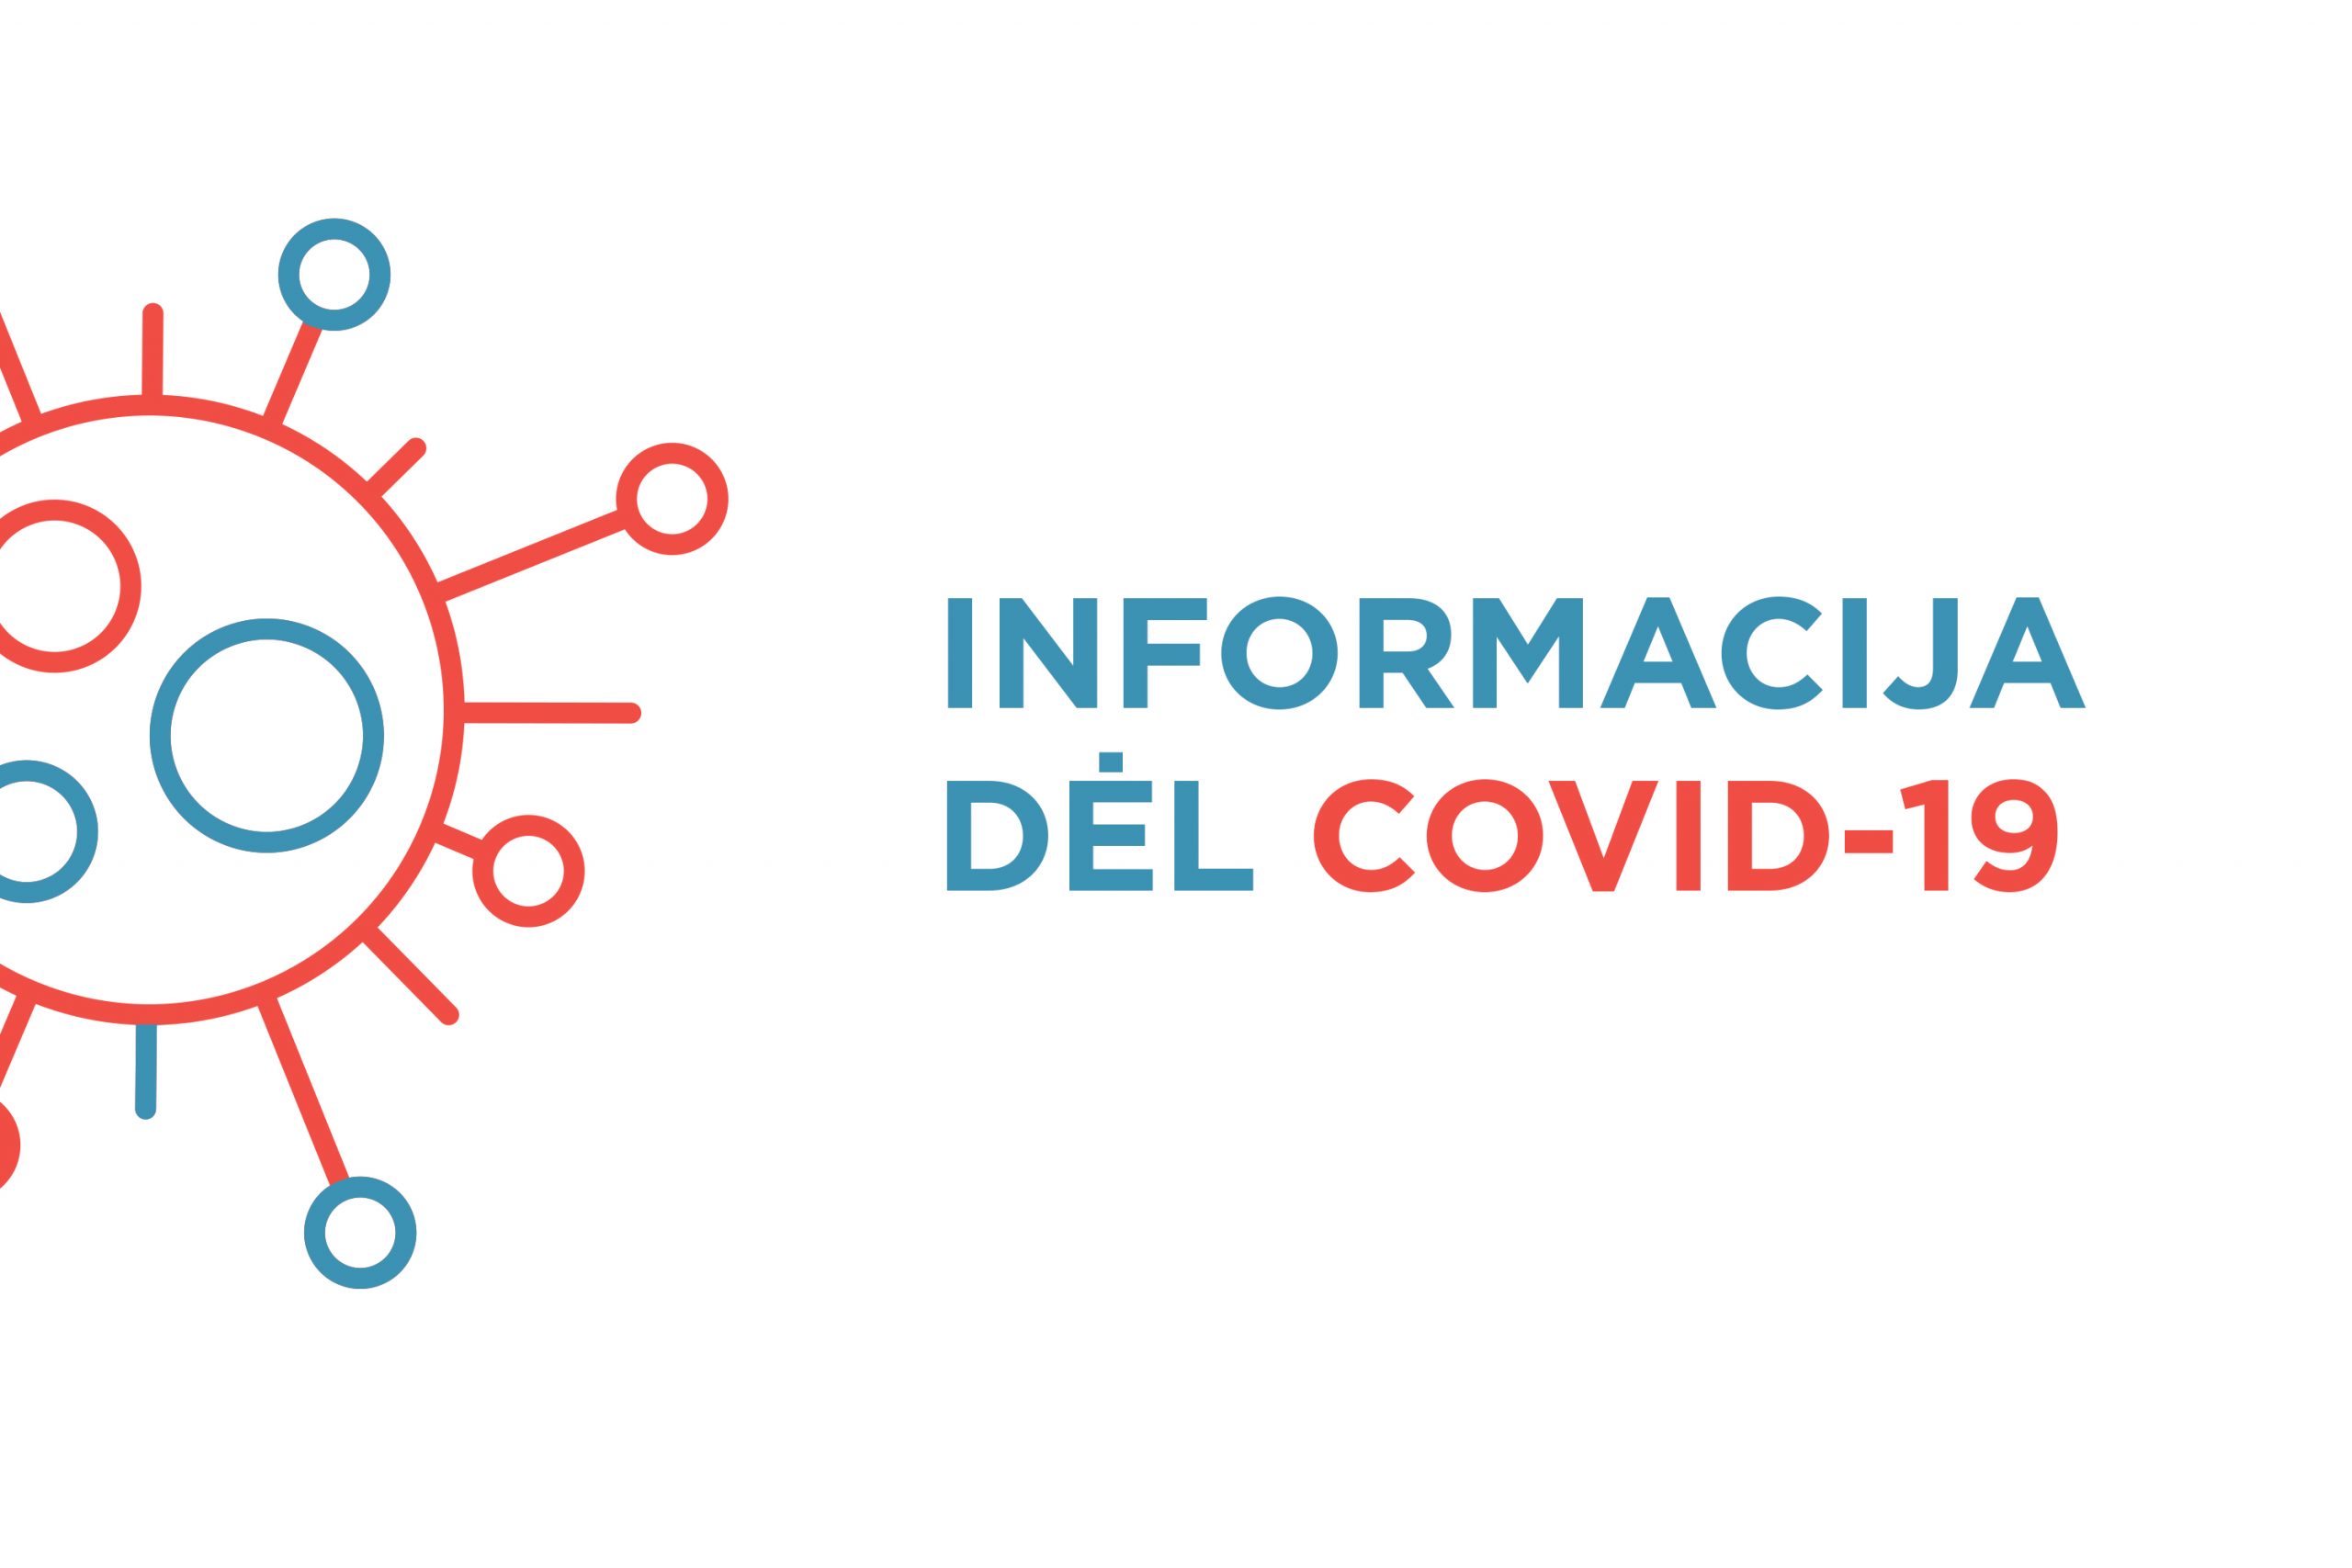 Iliustracija informacijai dėl COVID-19